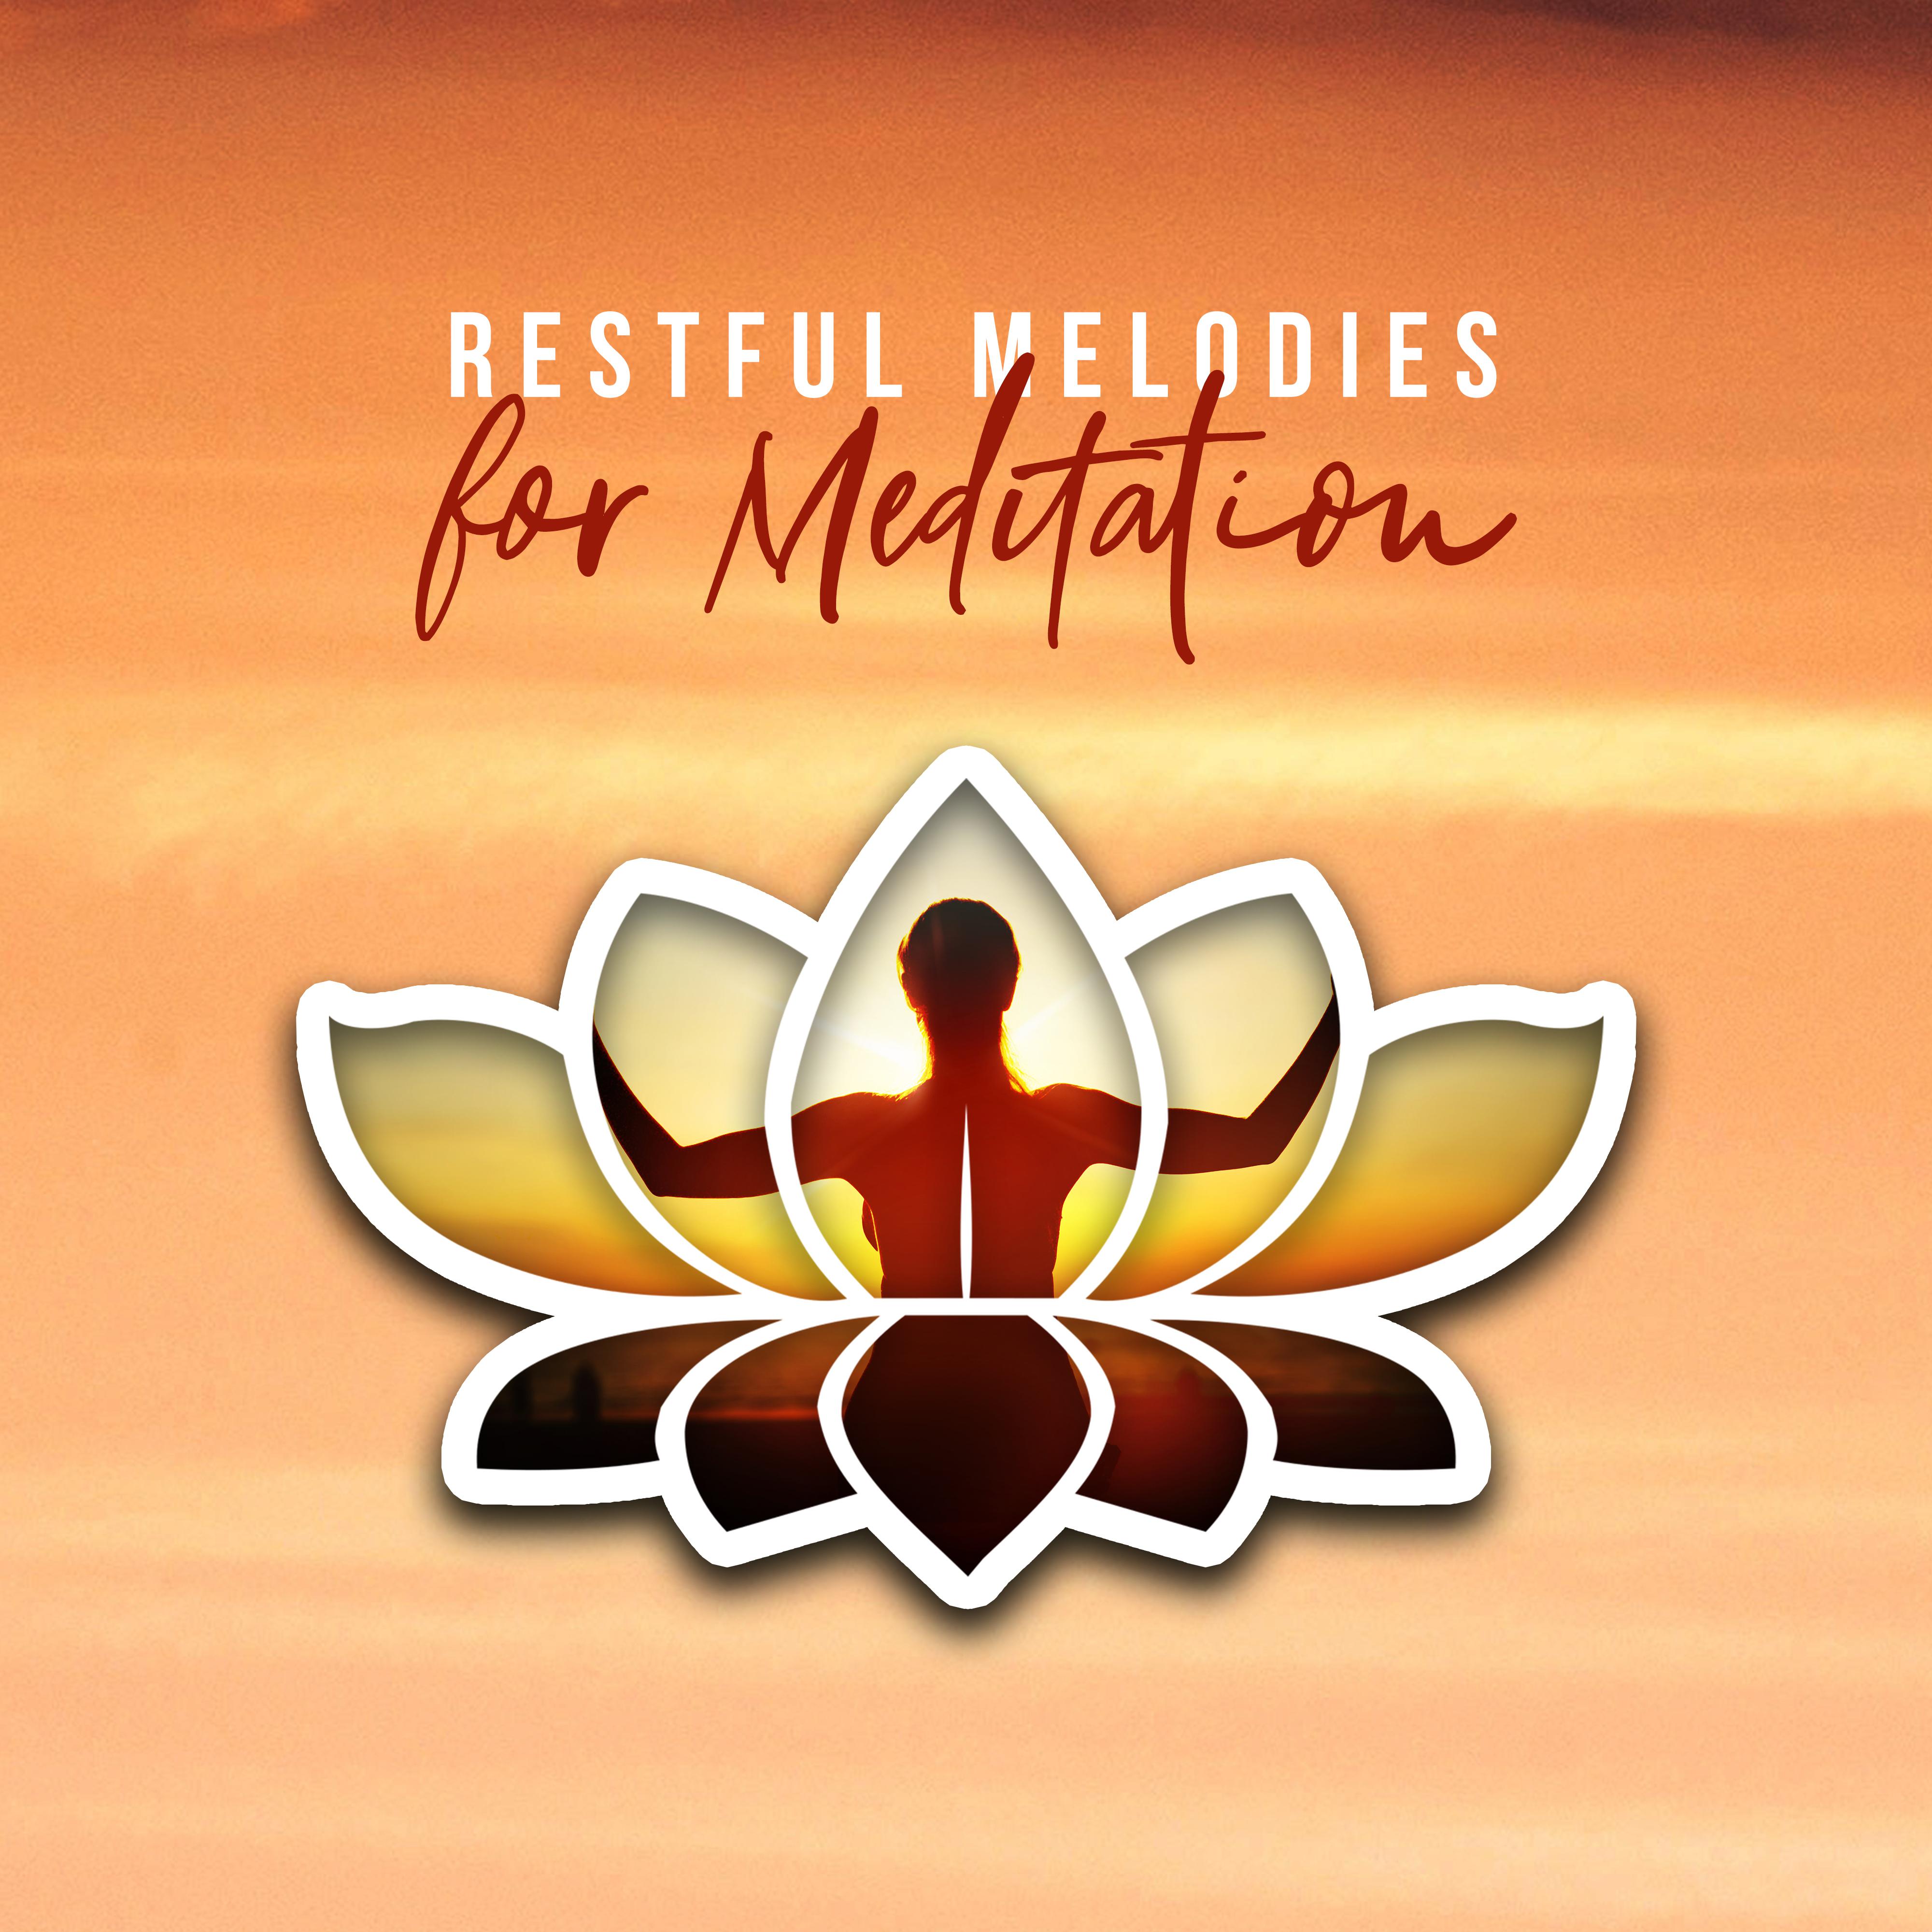 Restful Melodies for Meditation